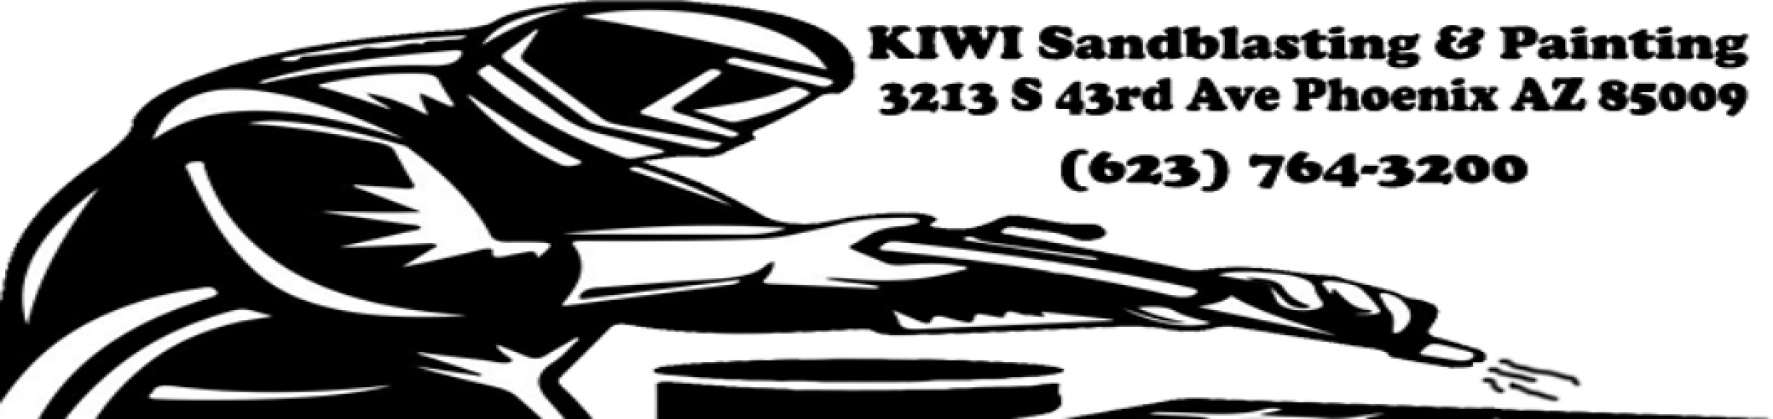 4809320428 Kiwi Sandblasting & Painting